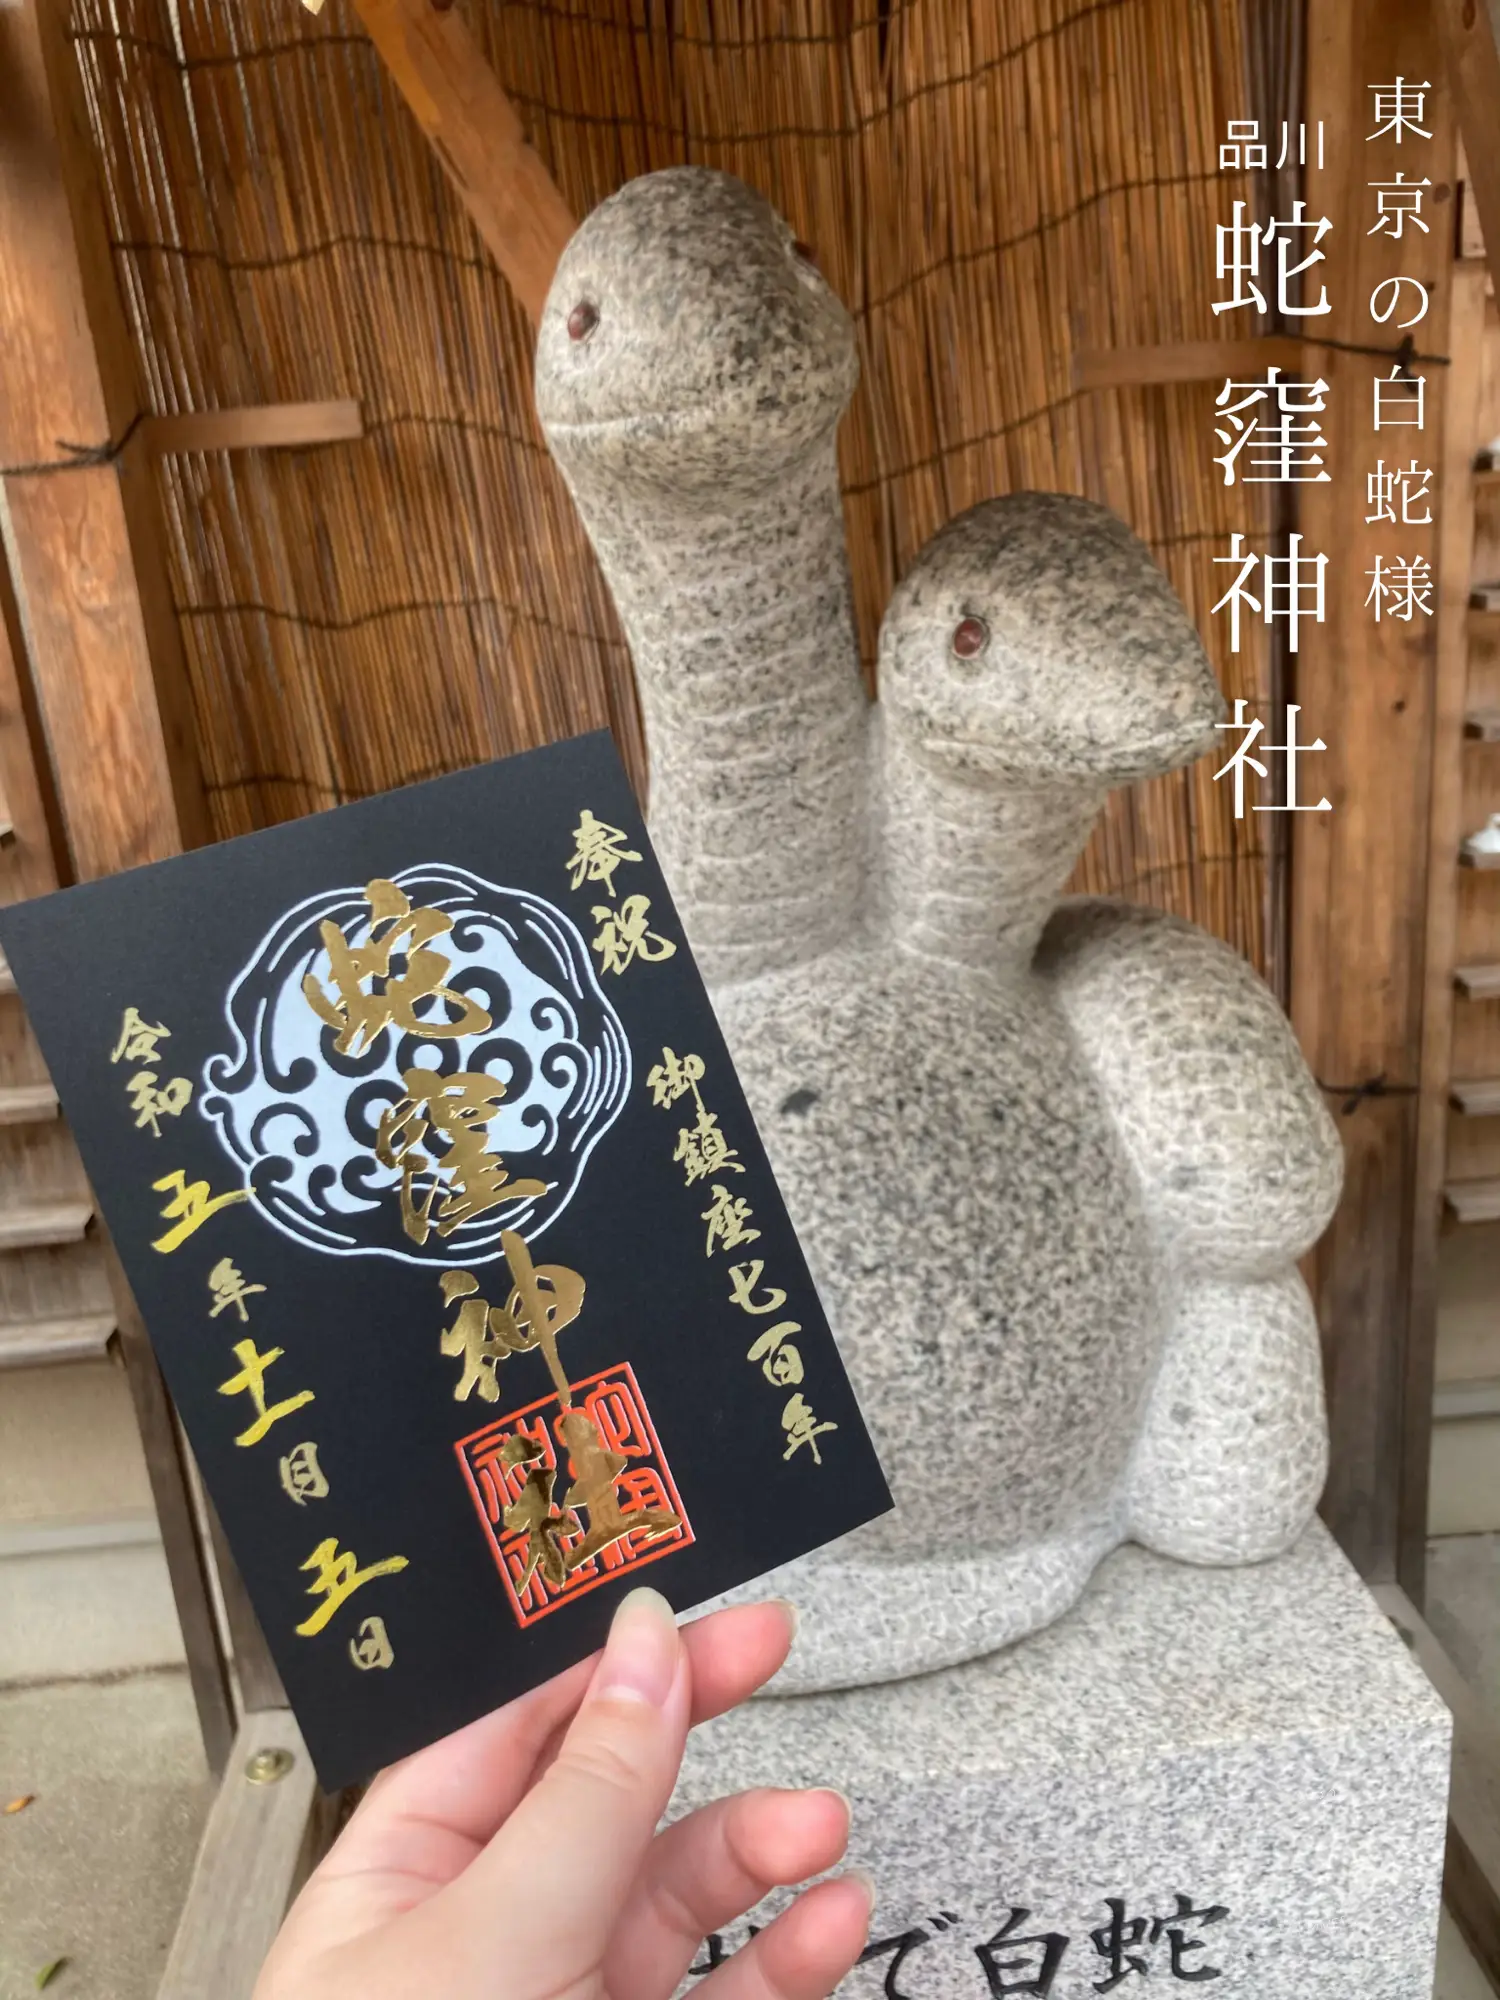 [Shinagawa] Tokyo White Snake